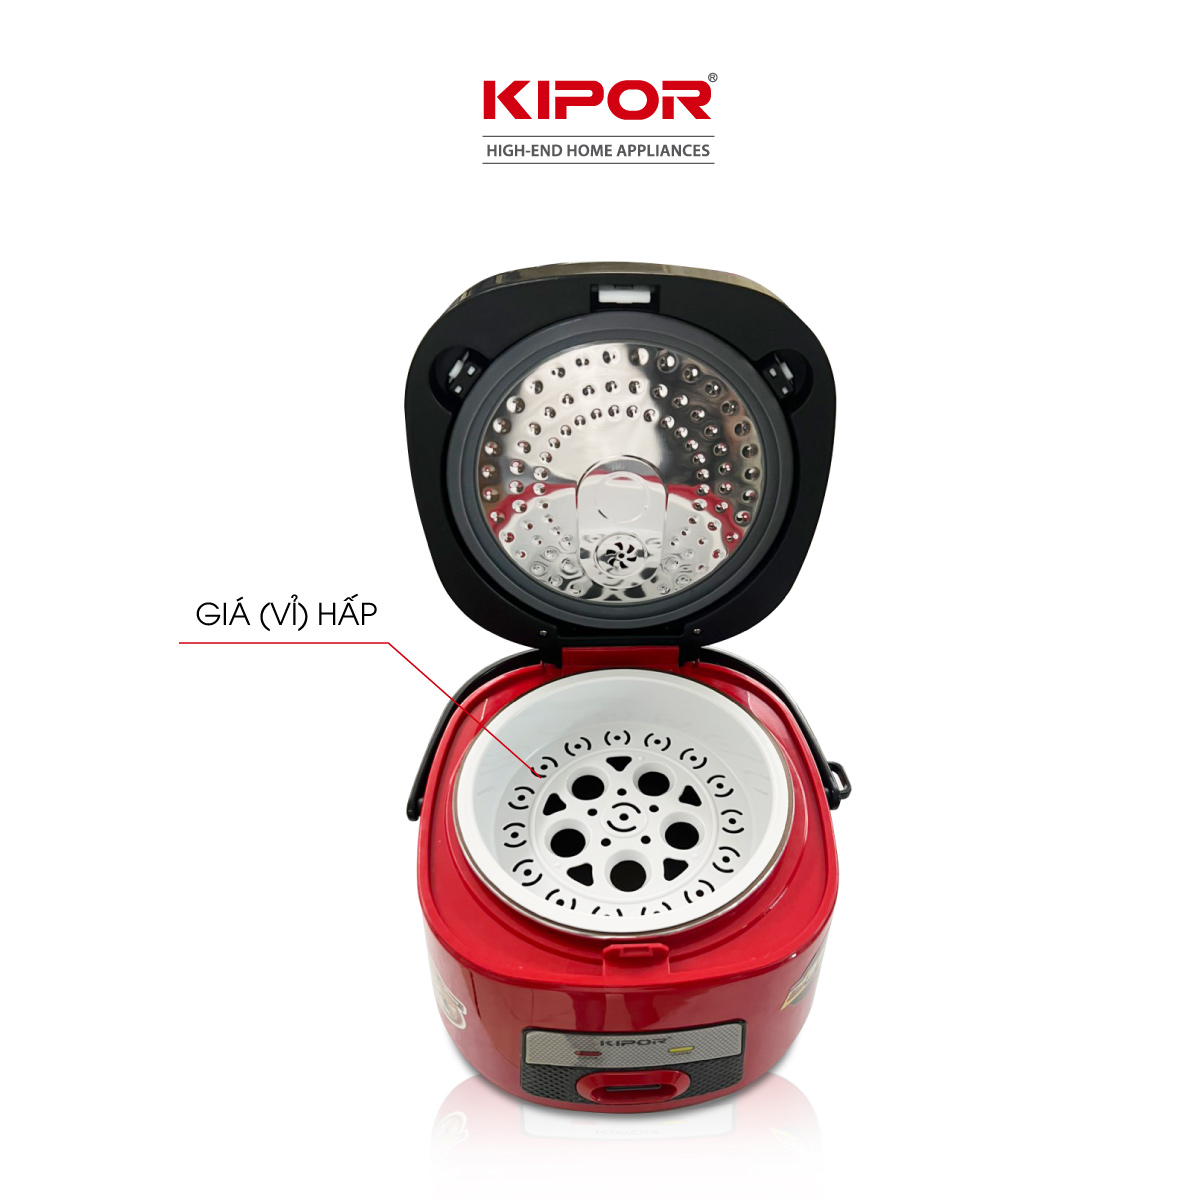 Nồi cơm điện KIPOR KP-N86918 - 1.8L - Lớp chống dính TEFLON cao cấp, lòng nồi niêu - Lòng nồi dày 3mm 1kg - Hàng chính hãng